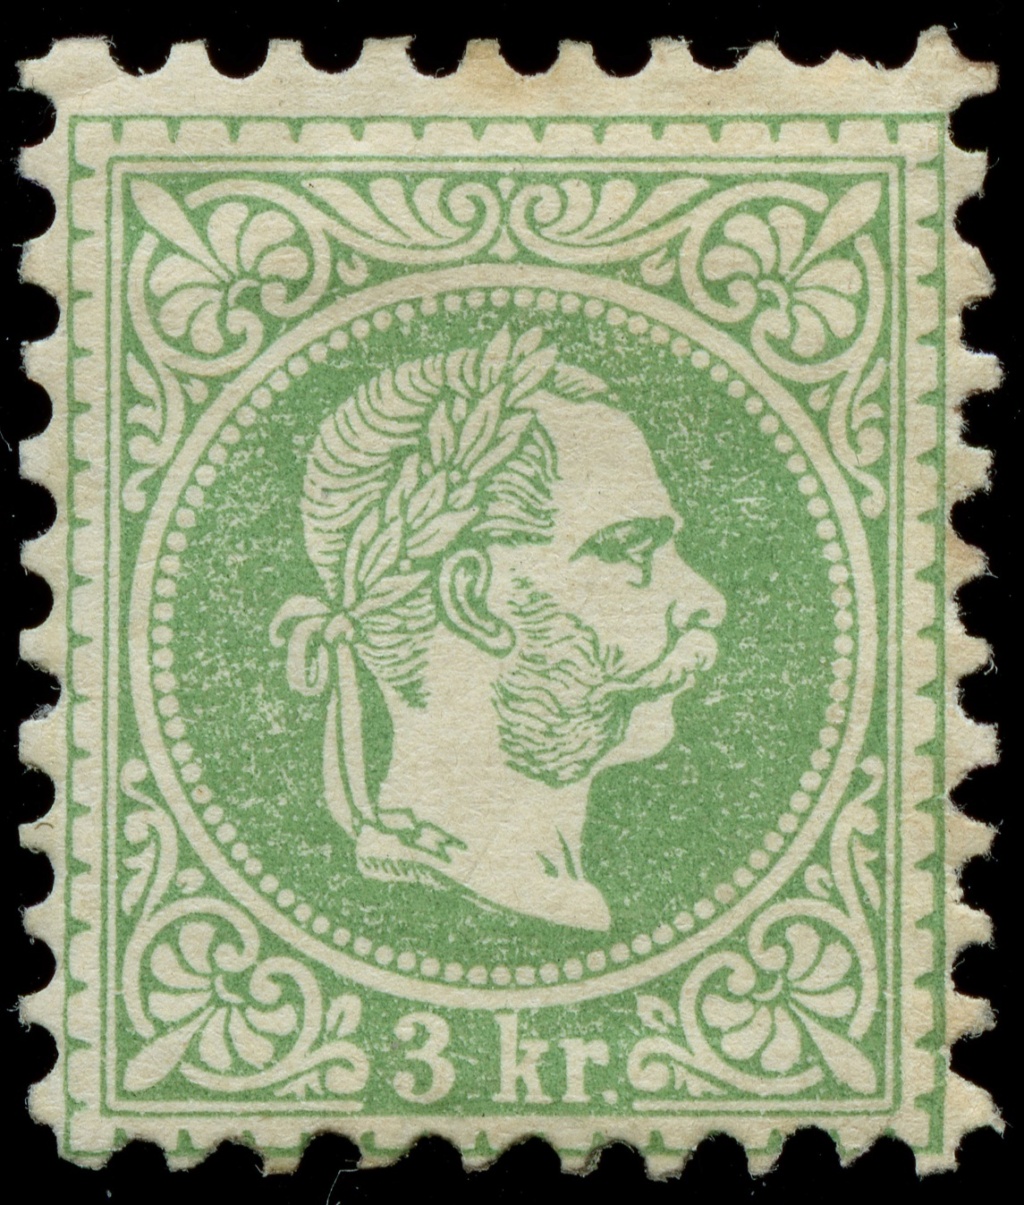 Osterreich - Freimarken-Ausgabe 1867 : Kopfbildnis Kaiser Franz Joseph I - Seite 23 Ank_3625